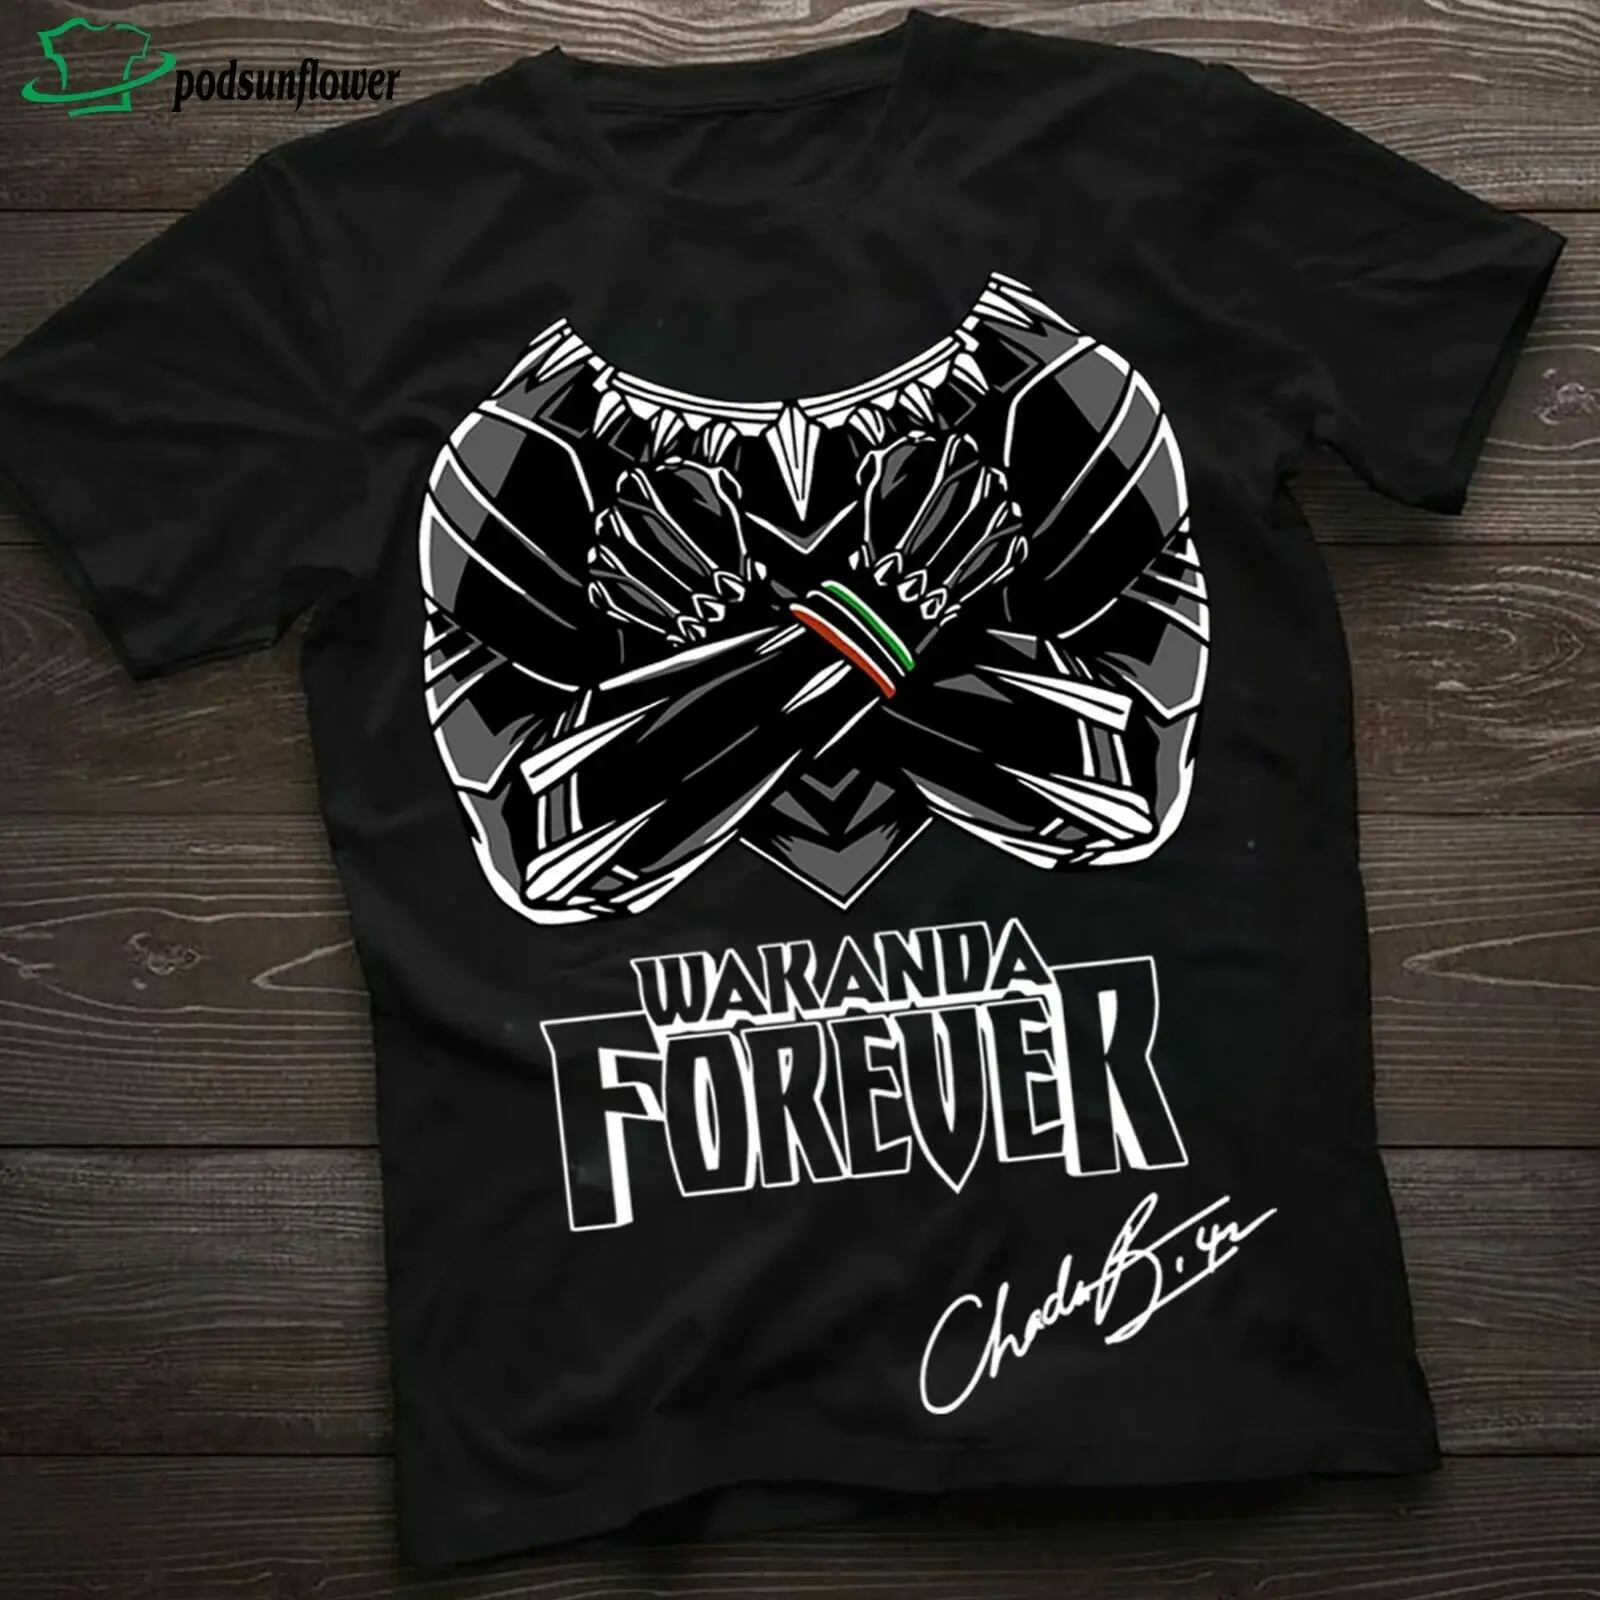 

Panther RIP Chadwick Boseman Wakanda forever signature shirt